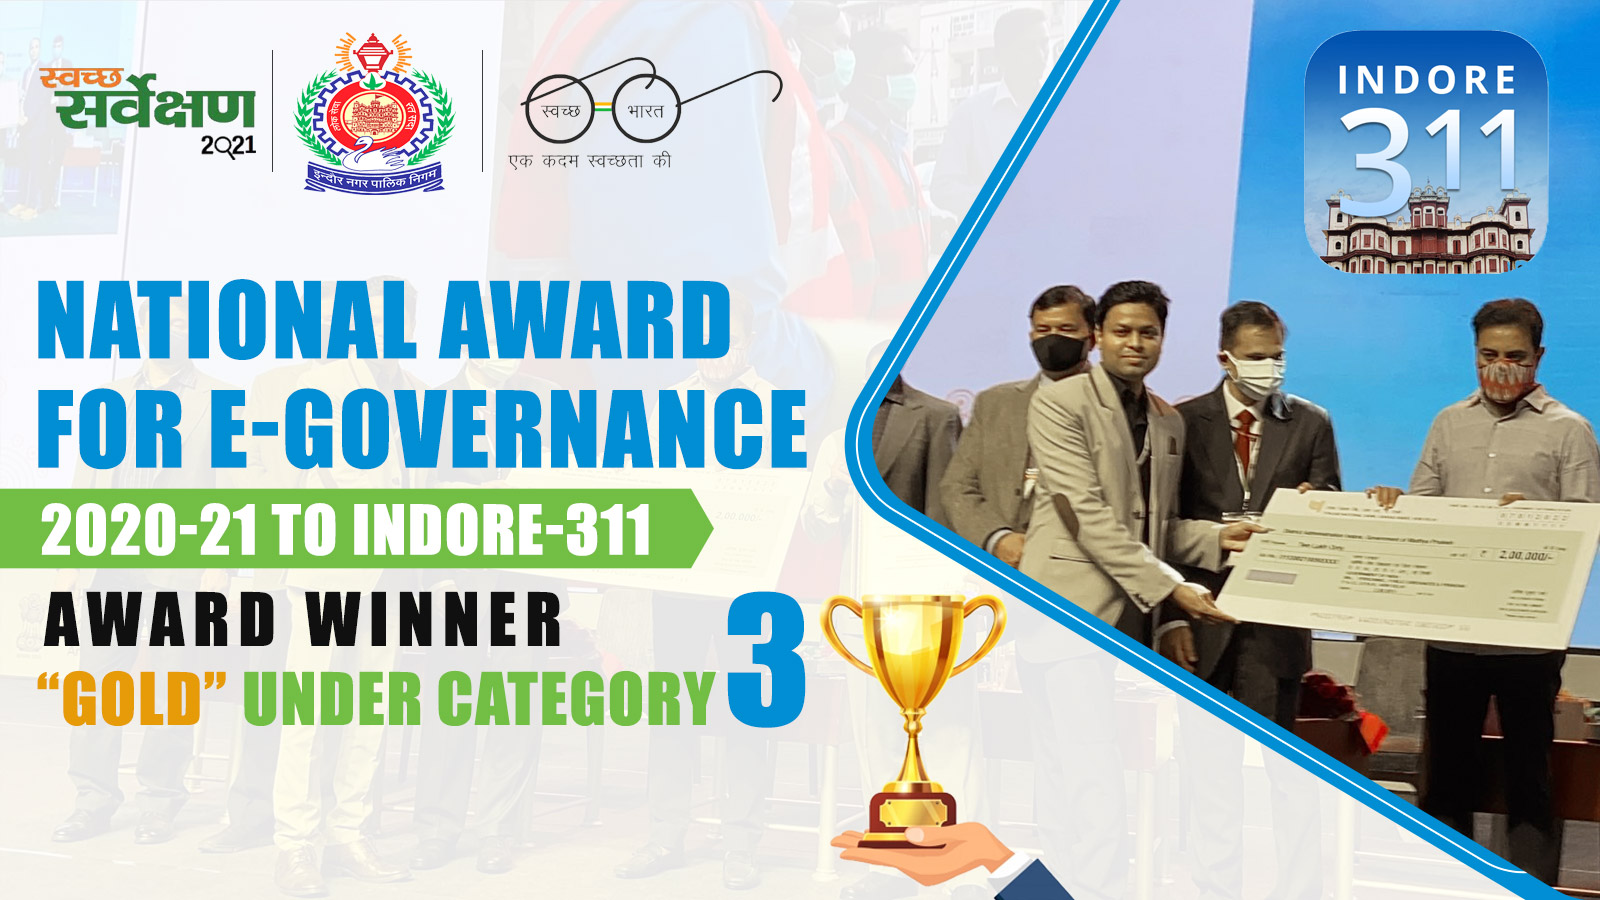 National Award for e-Governance 2020-21 to Indore-311